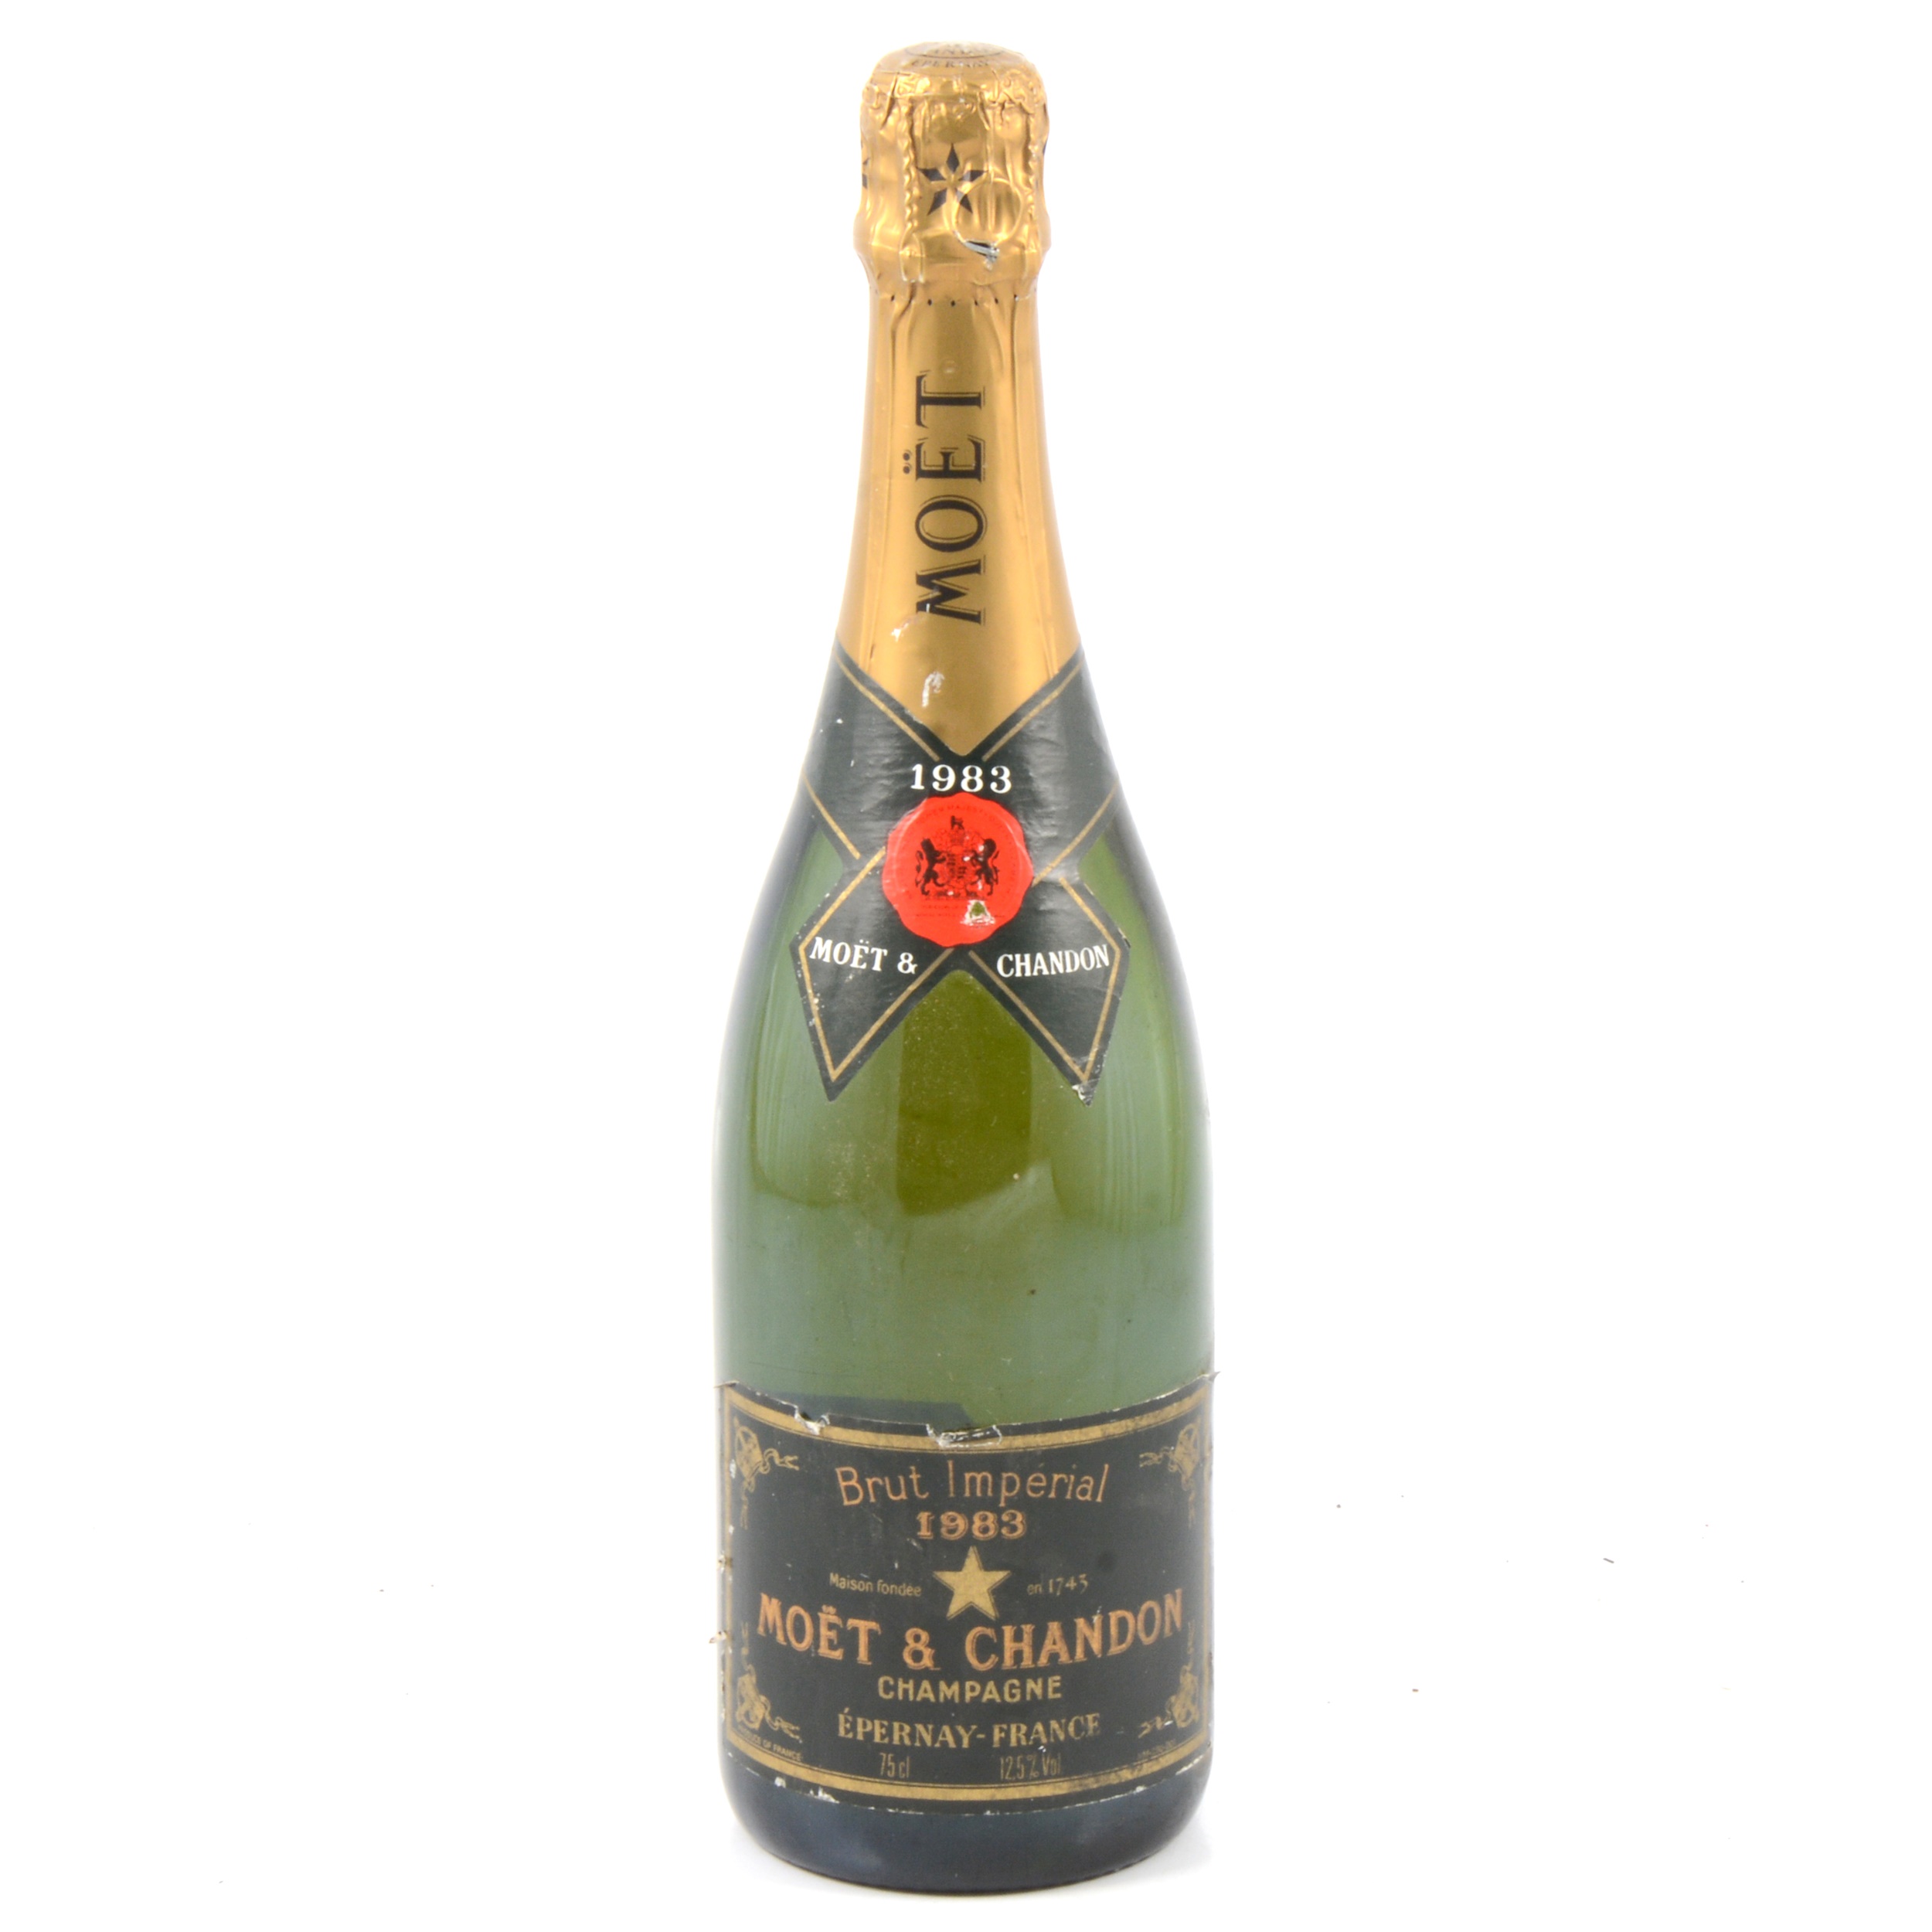 Moët & Chandon, 1983 Brut Imperial Champagne, 1 bottle.